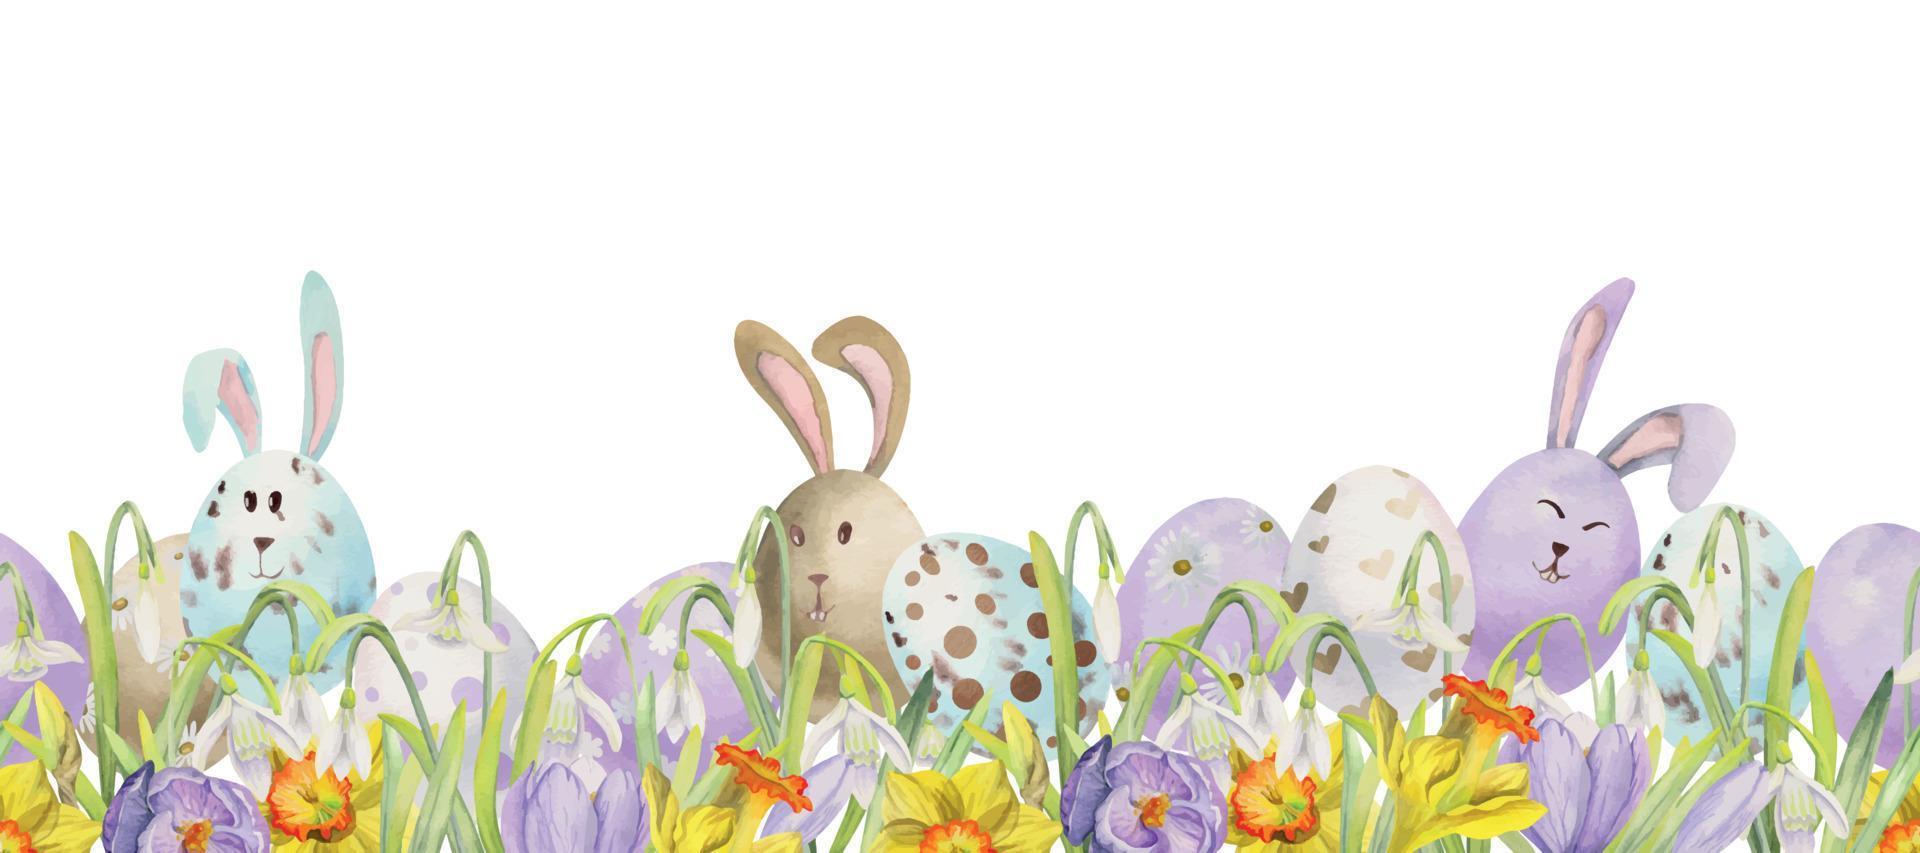 waterverf hand- getrokken Pasen viering clip art. naadloos grens met eieren, konijntjes, bloemen, bladeren en koelich. geïsoleerd Aan wit achtergrond. uitnodigingen, geschenken, groet kaarten, afdrukken, textiel vector